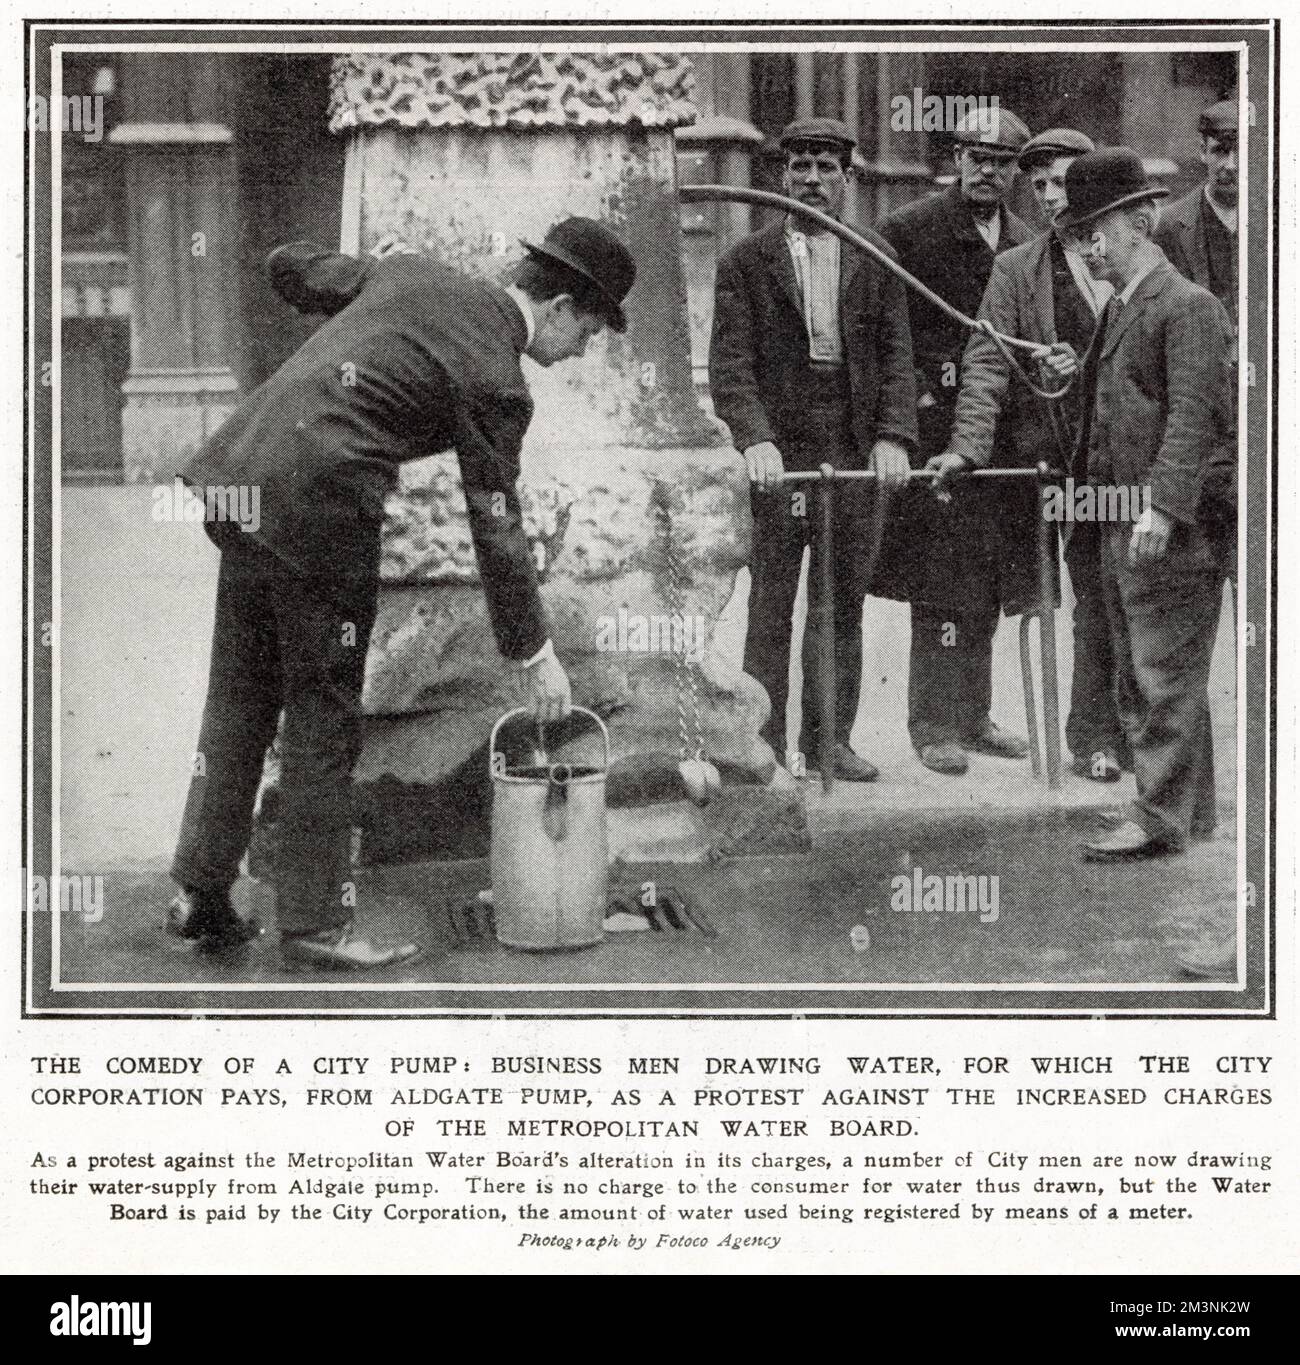 Lokale Unternehmen protestierten gegen die erhöhten Gebühren des Metropolitan Water Board auf ihrem registrierten Zähler. Das Foto zeigt Arbeiter von London City, die Wasser aus der kostenlosen Aldgate Pump ziehen, um Geld zu sparen. Datum: 1908 Stockfoto